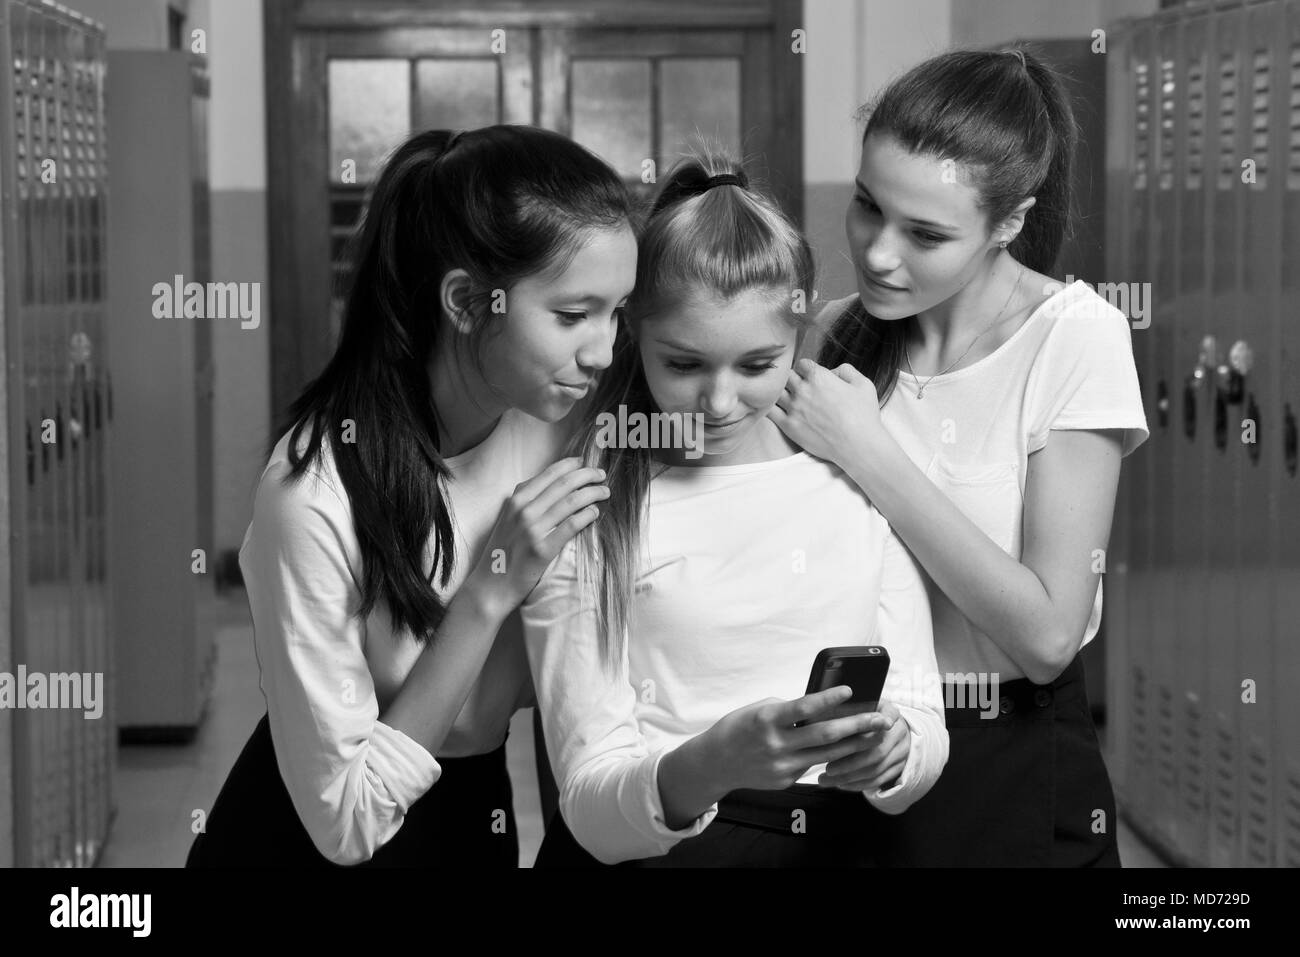 Trois professionnels high school girls s'amuser avec leur téléphone cellulaire Banque D'Images